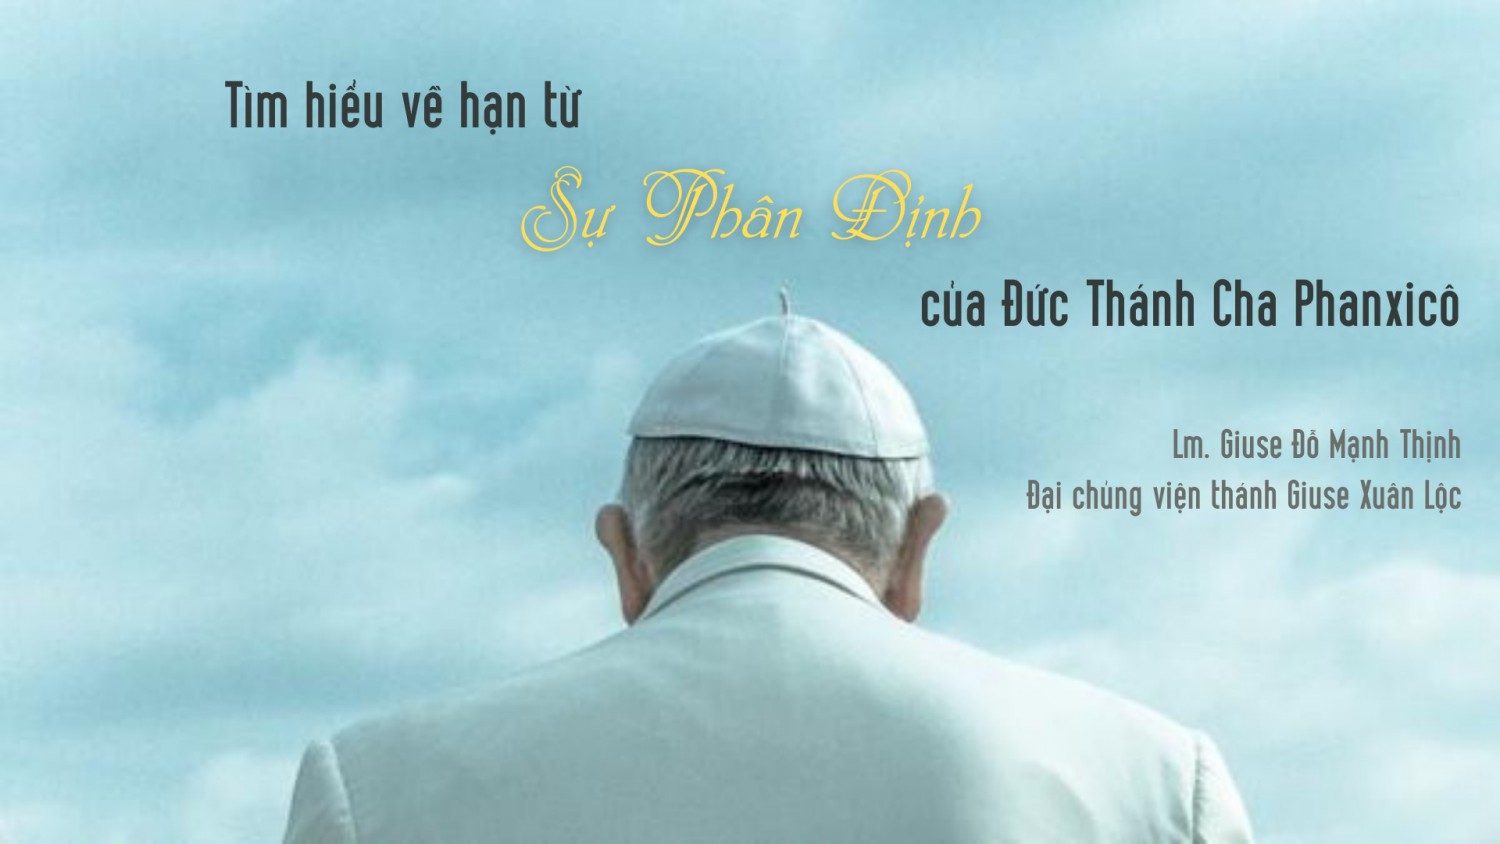 Cầu nguyện cùng Đức Giáo Hoàng ngày 21.01.2022